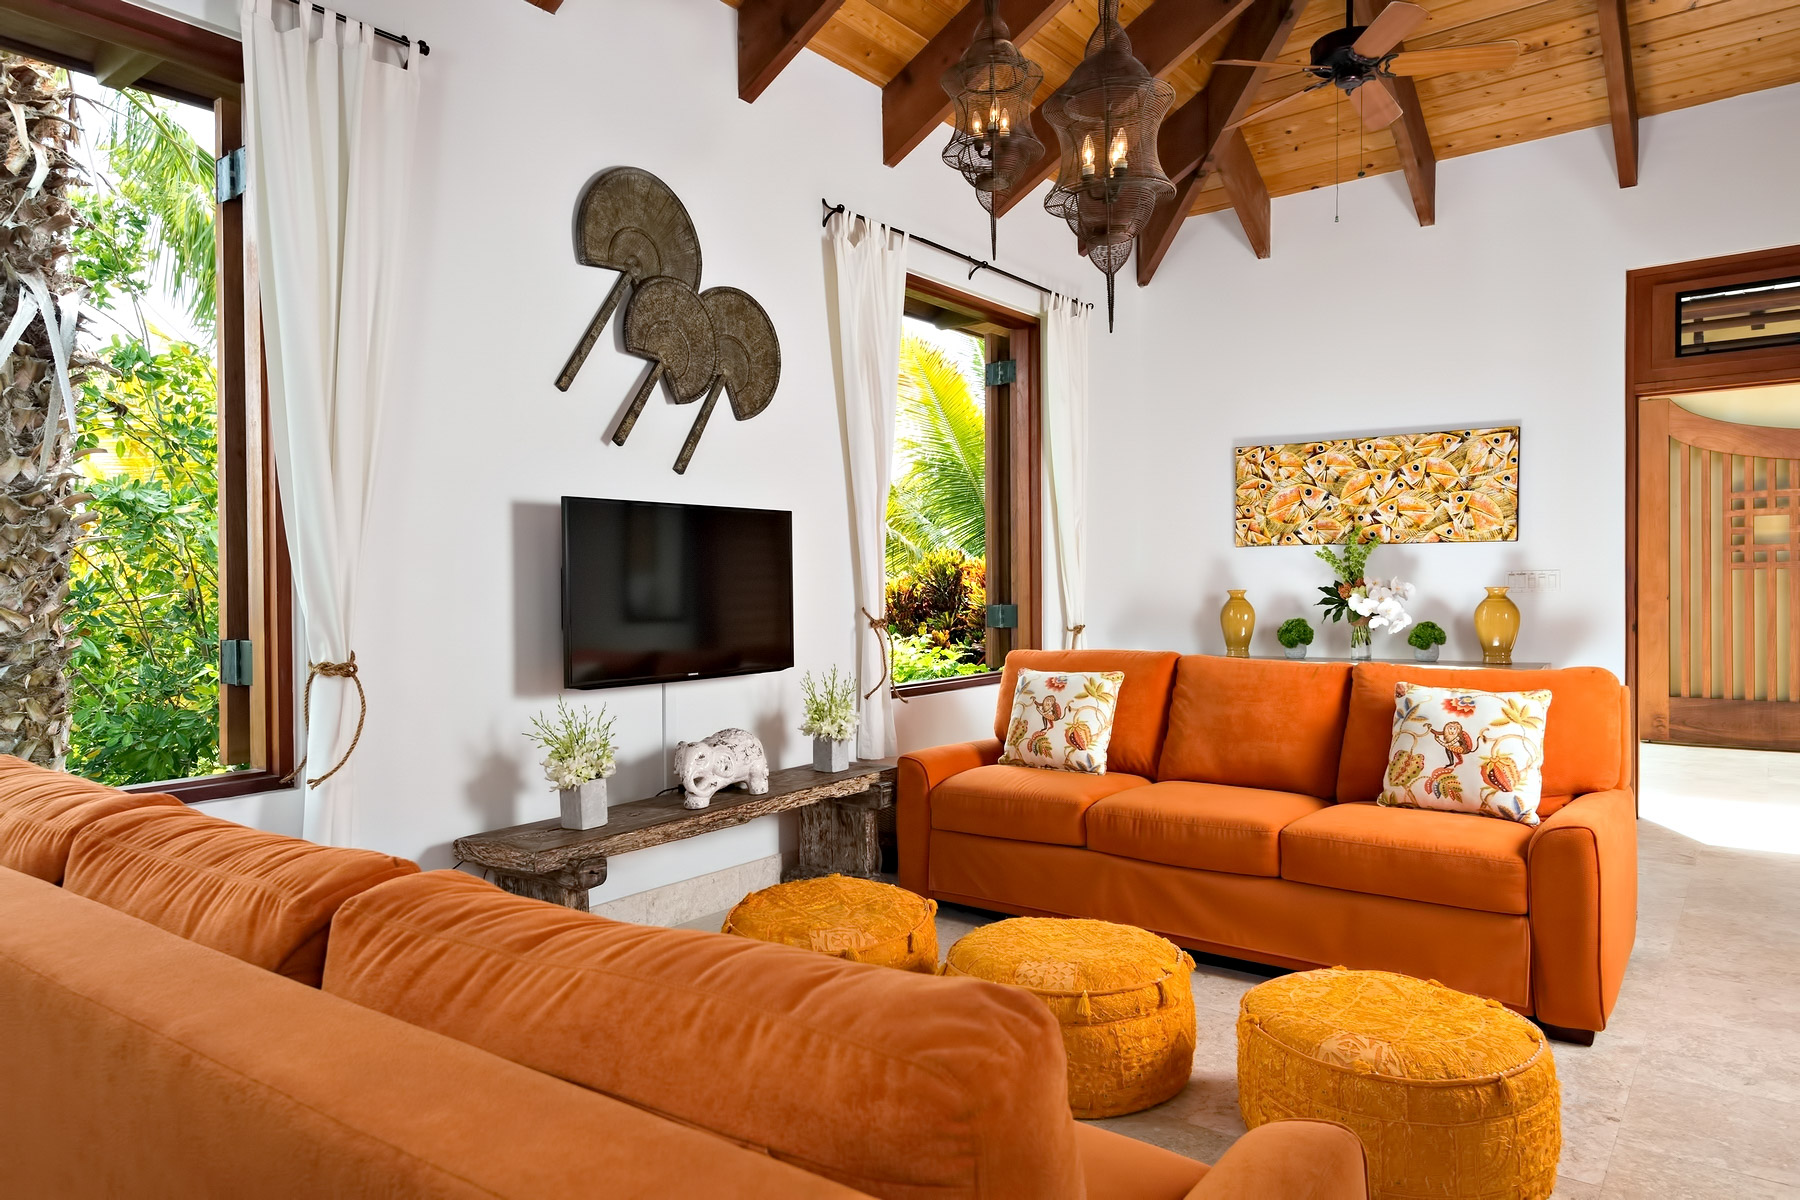 Luxury Villa Alamandra – Providenciales, Turks and Caicos Islands